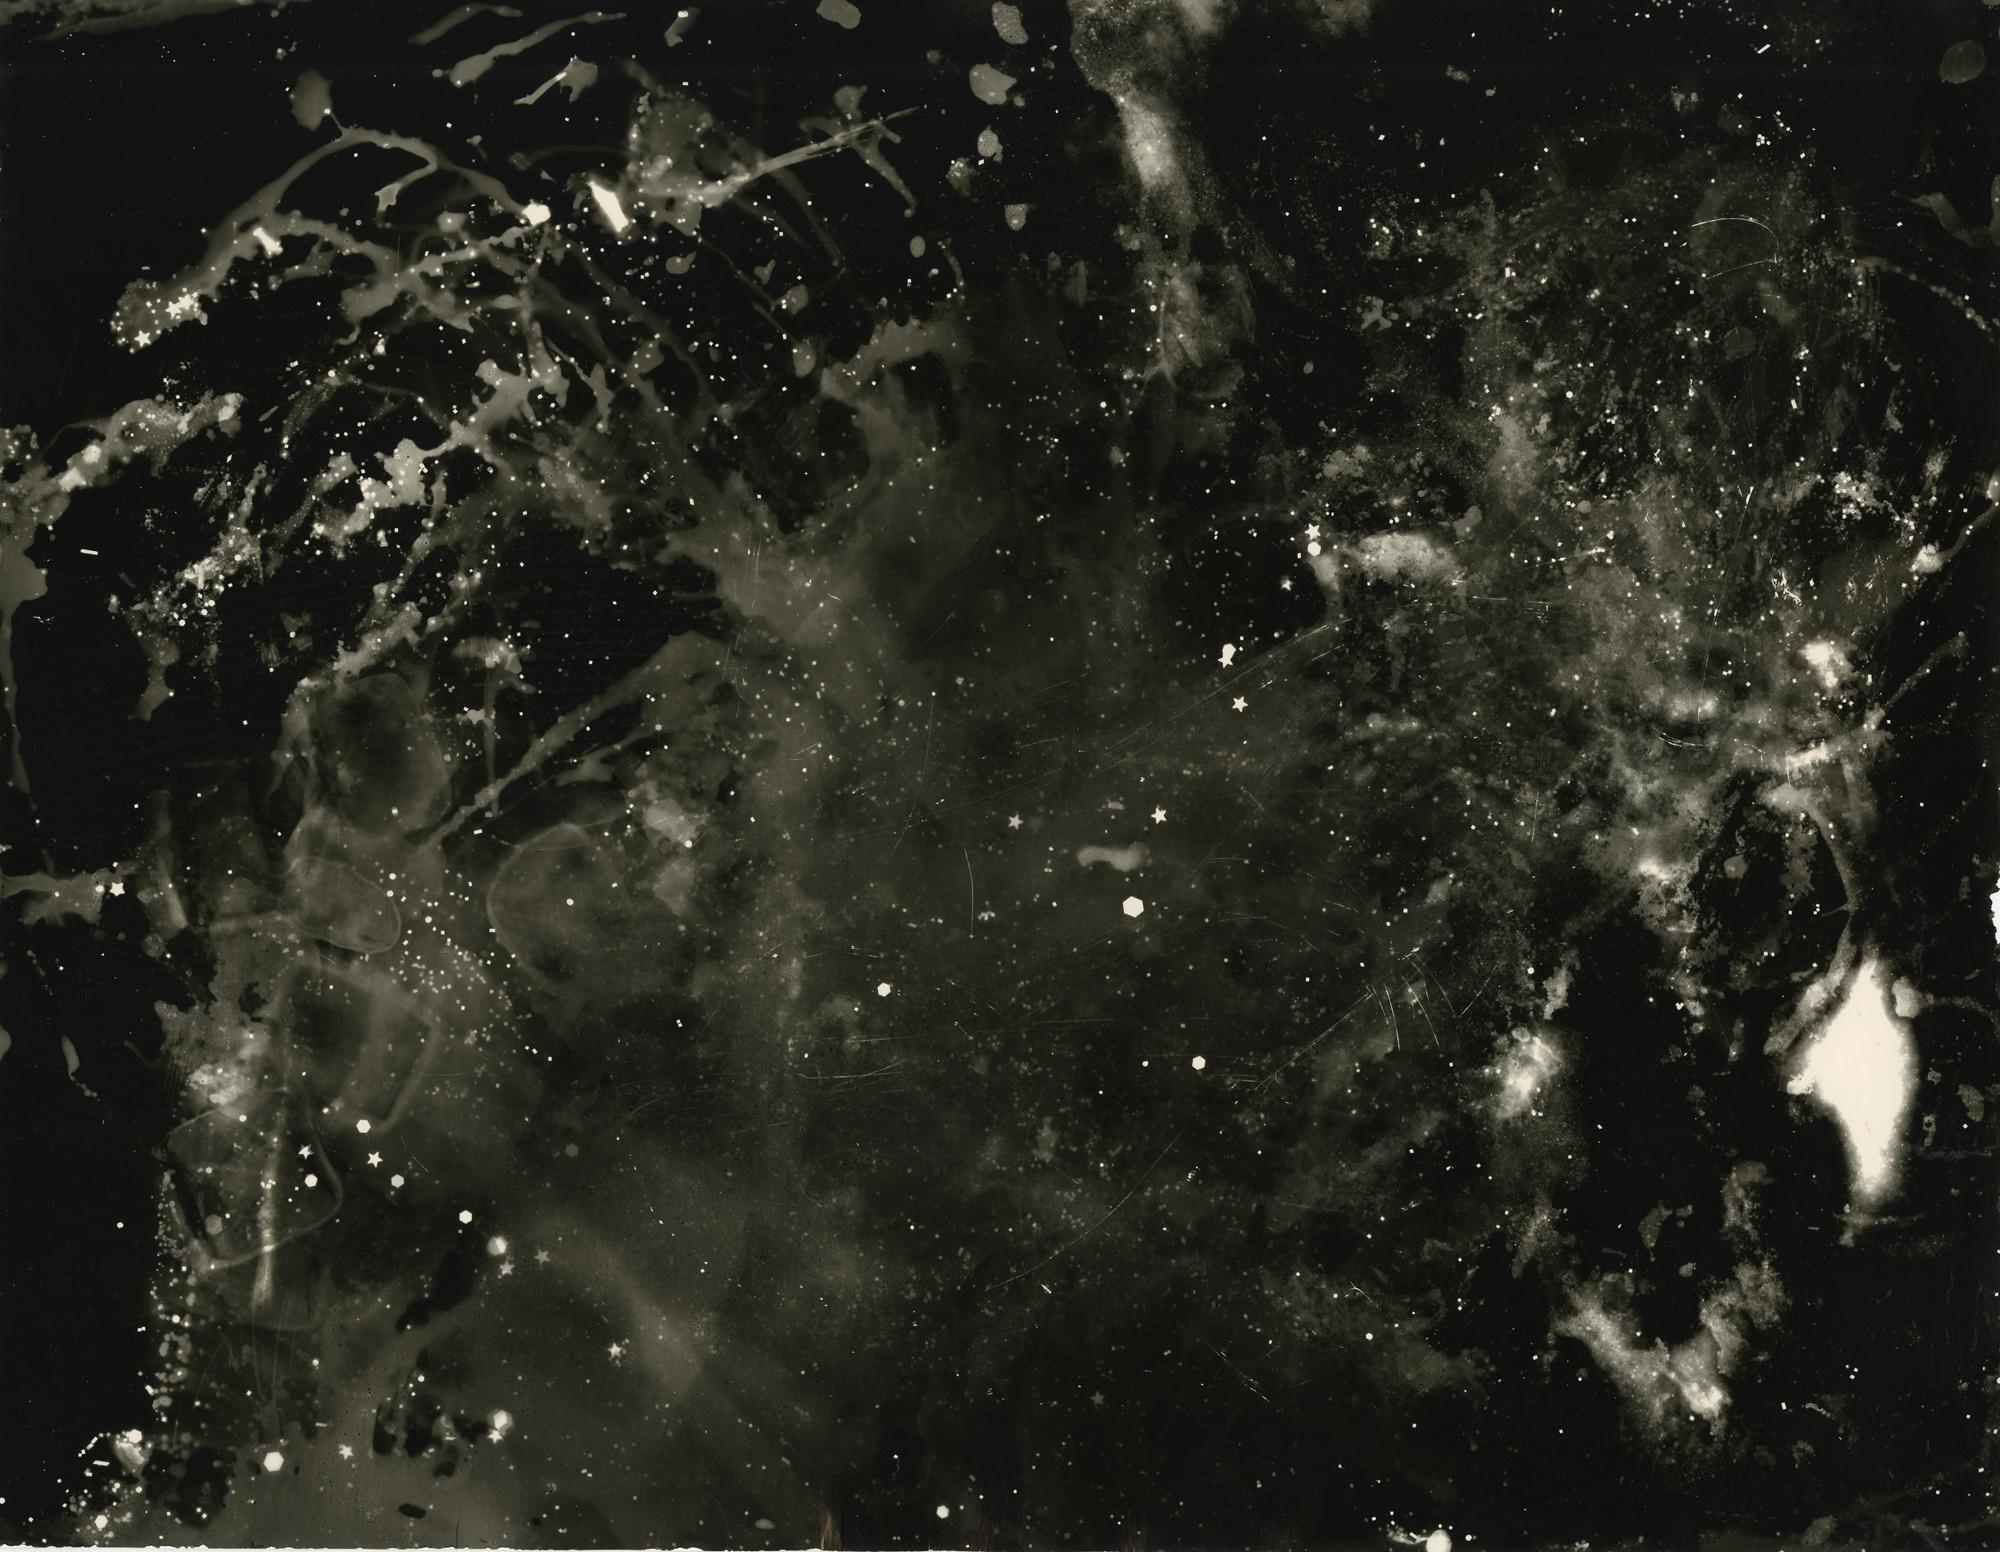 Starry Night - abstraktes, einzigartiges, zeitgenössisches Fotogramm aus Silbergelatinesatin im Altprozess